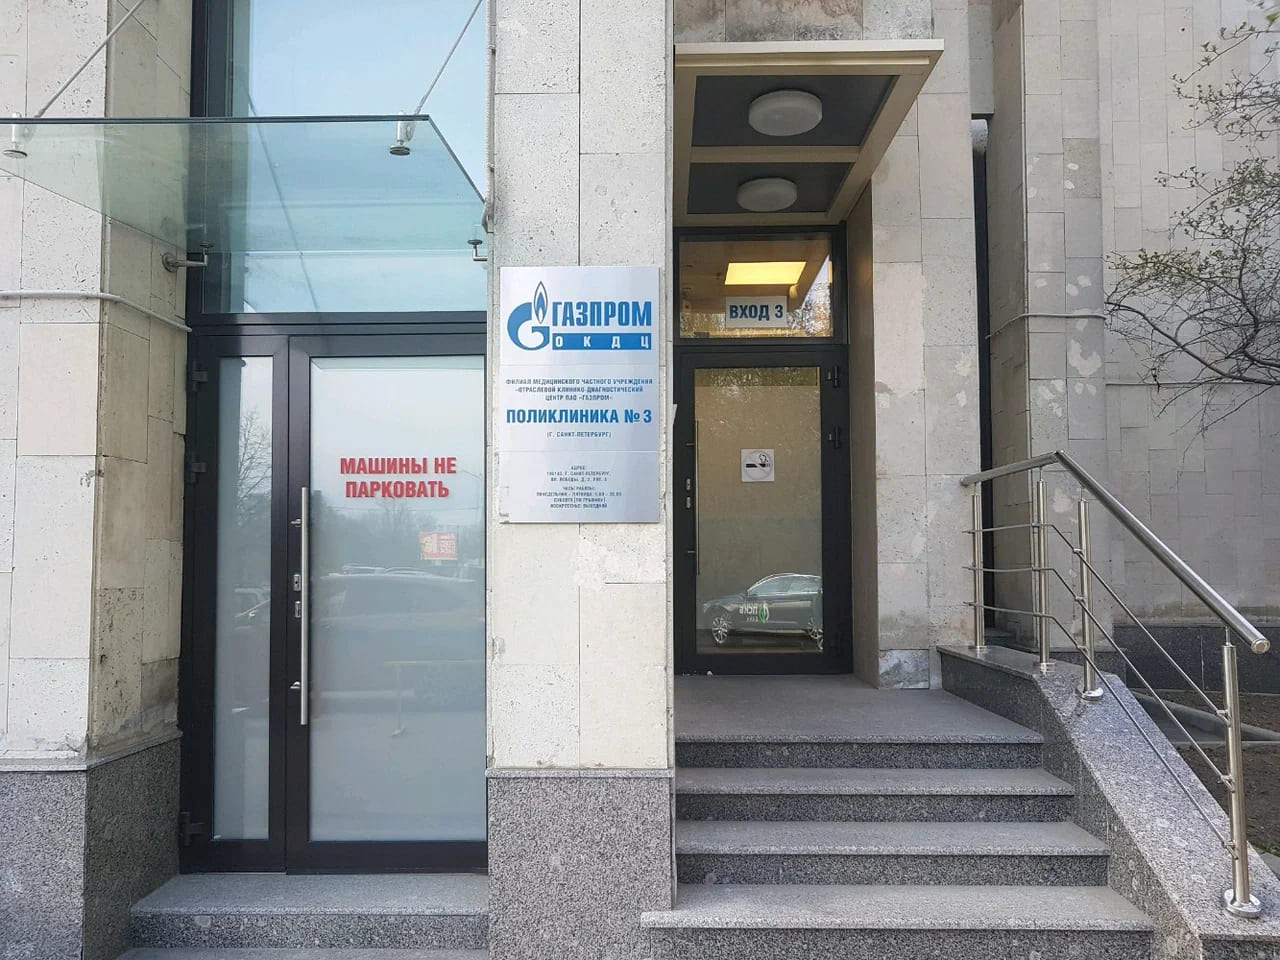 Газпром Поликлиника №3 - цены, режим работы, тип томографа, скидки